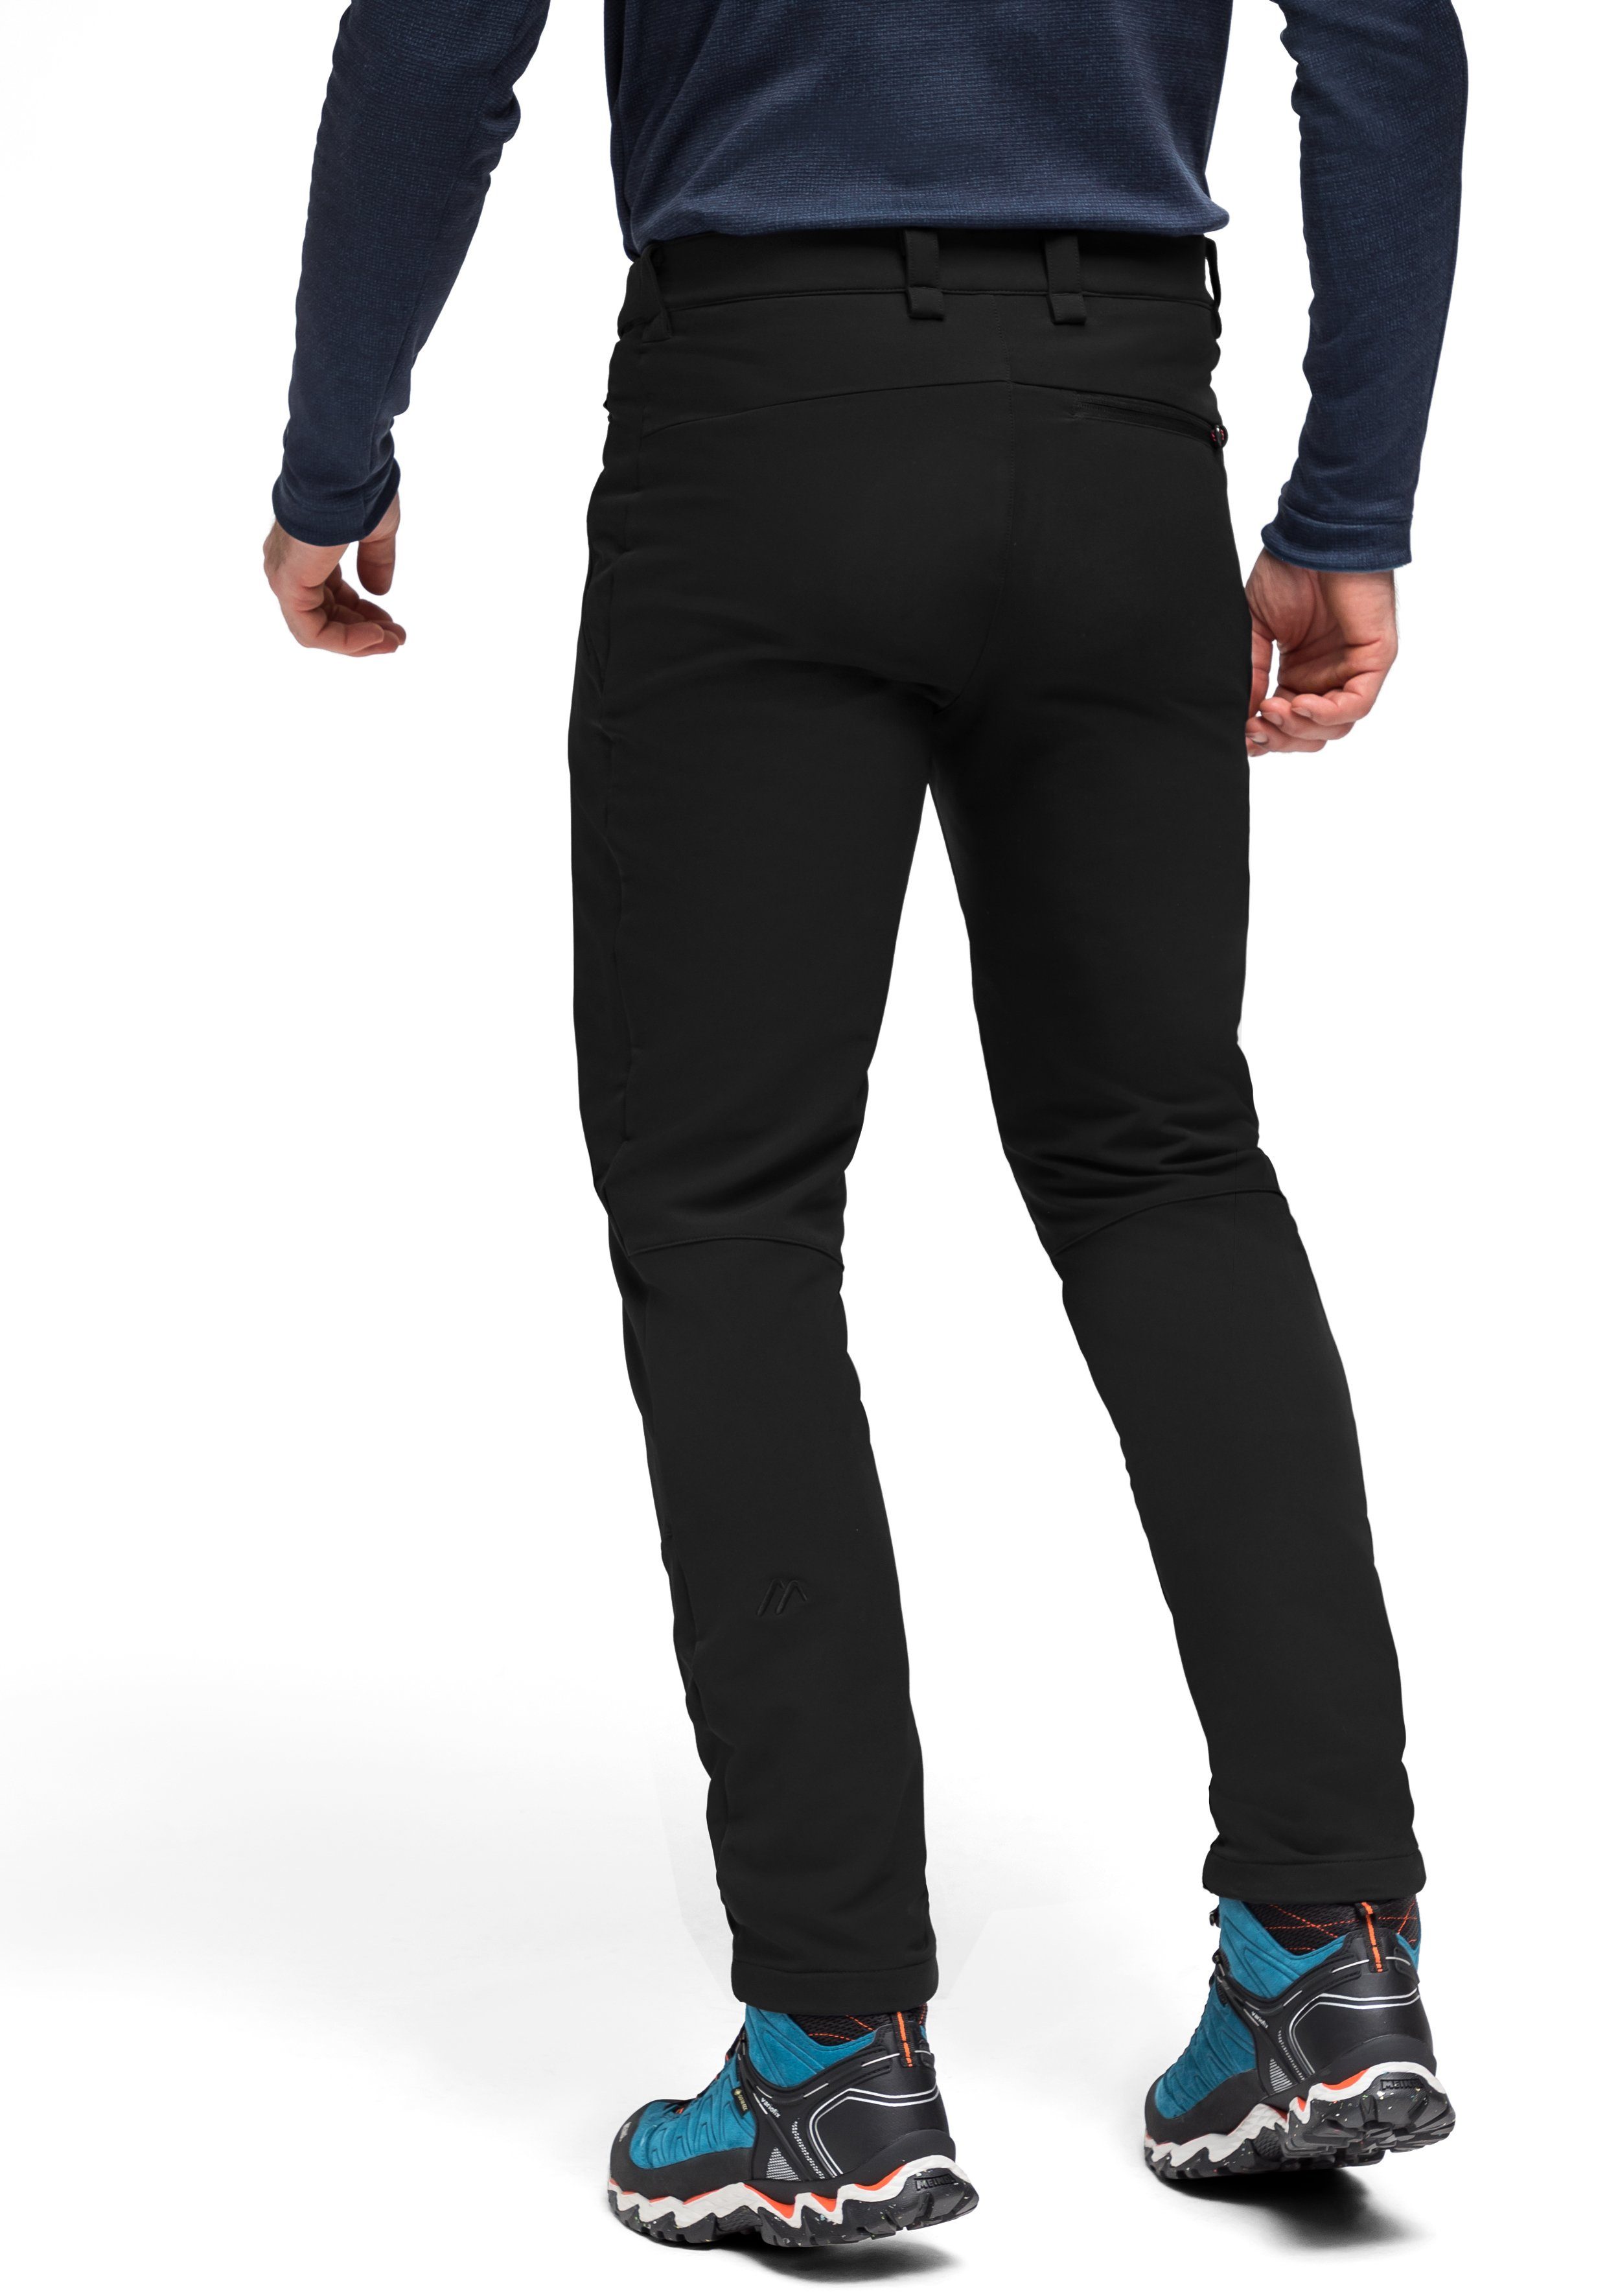 Funktionshose modernen Foidit M Warme, elastische schwarz Maier Look im cleanen Sports Outdoorhose